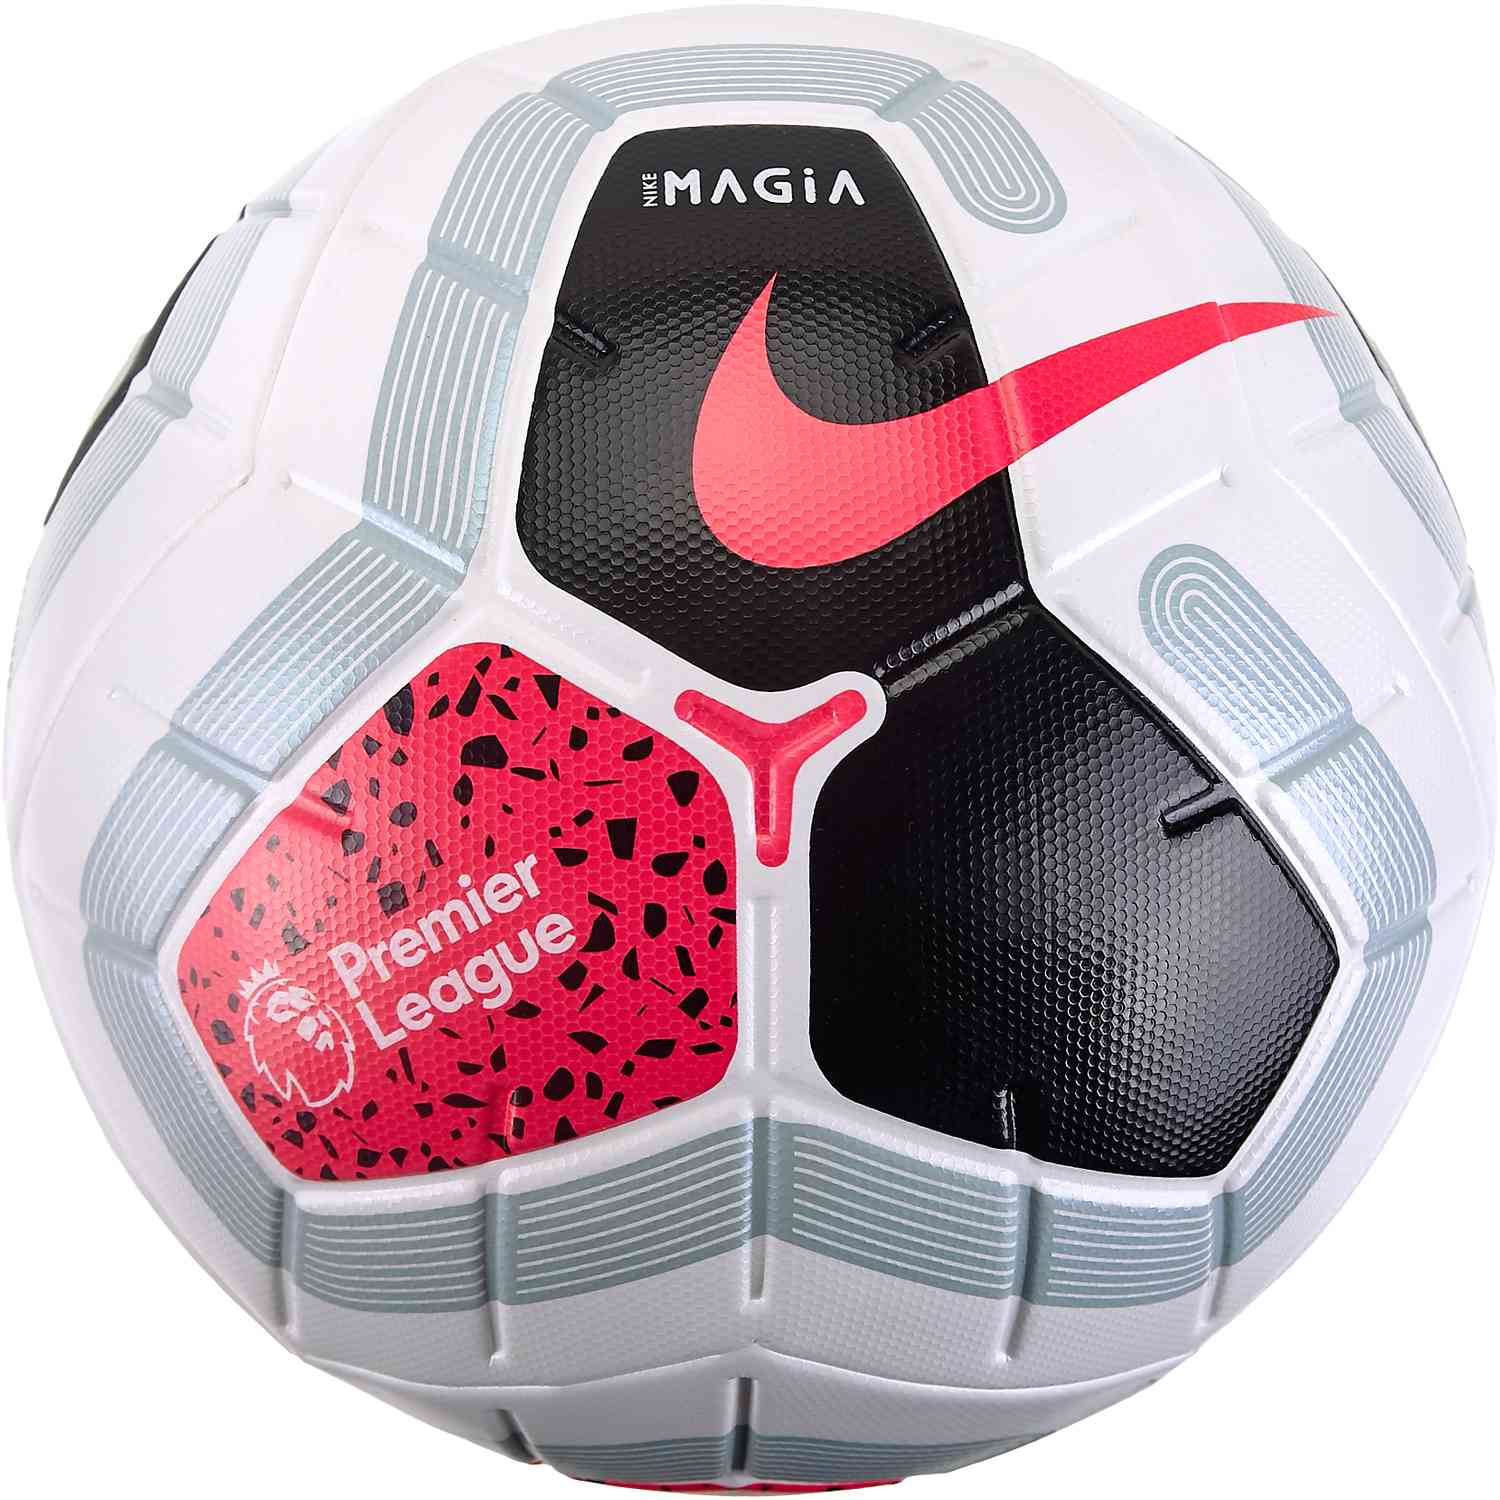 Passief schuintrekken Pest Nike Premier League Magia Match Soccer Ball - 2019/20 - SoccerPro